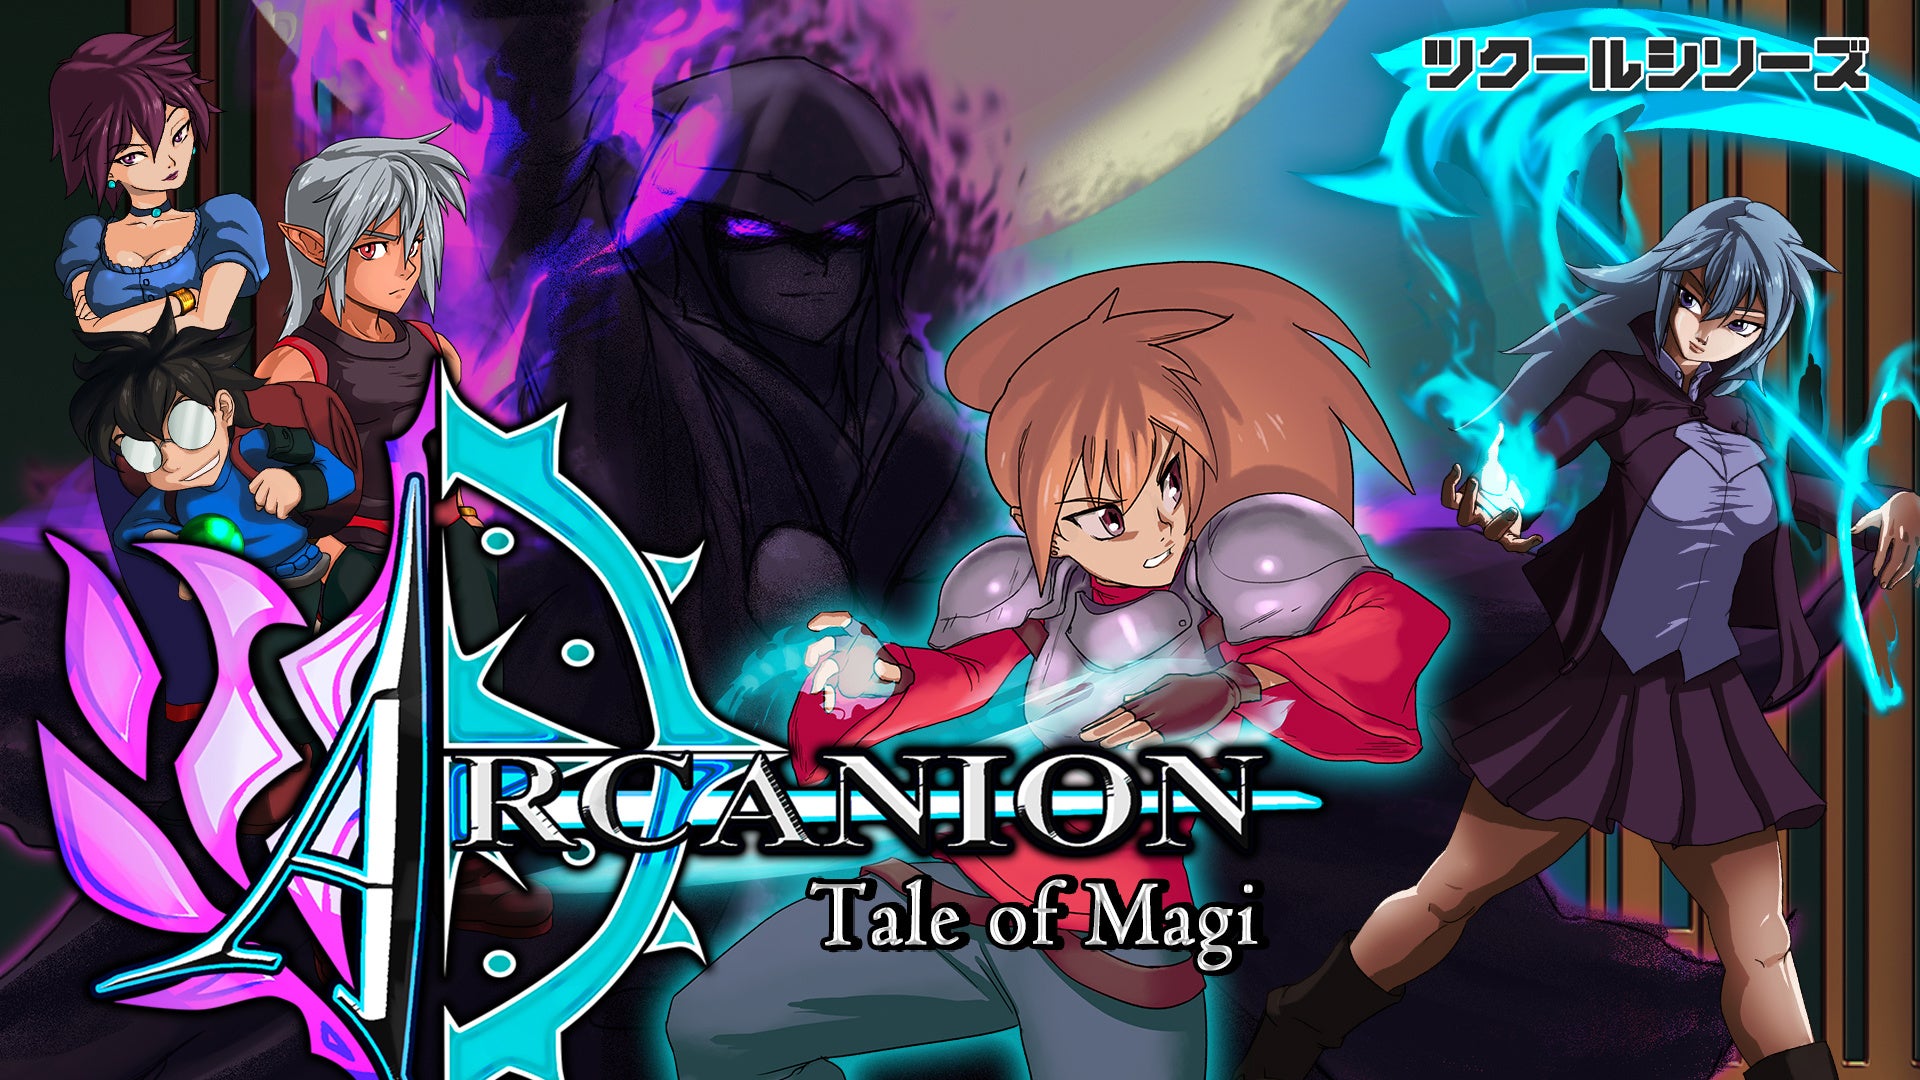 『ツクールシリーズ Arcanion: Tale of Magi』Nintendo Switch™にて2/17(木)発売